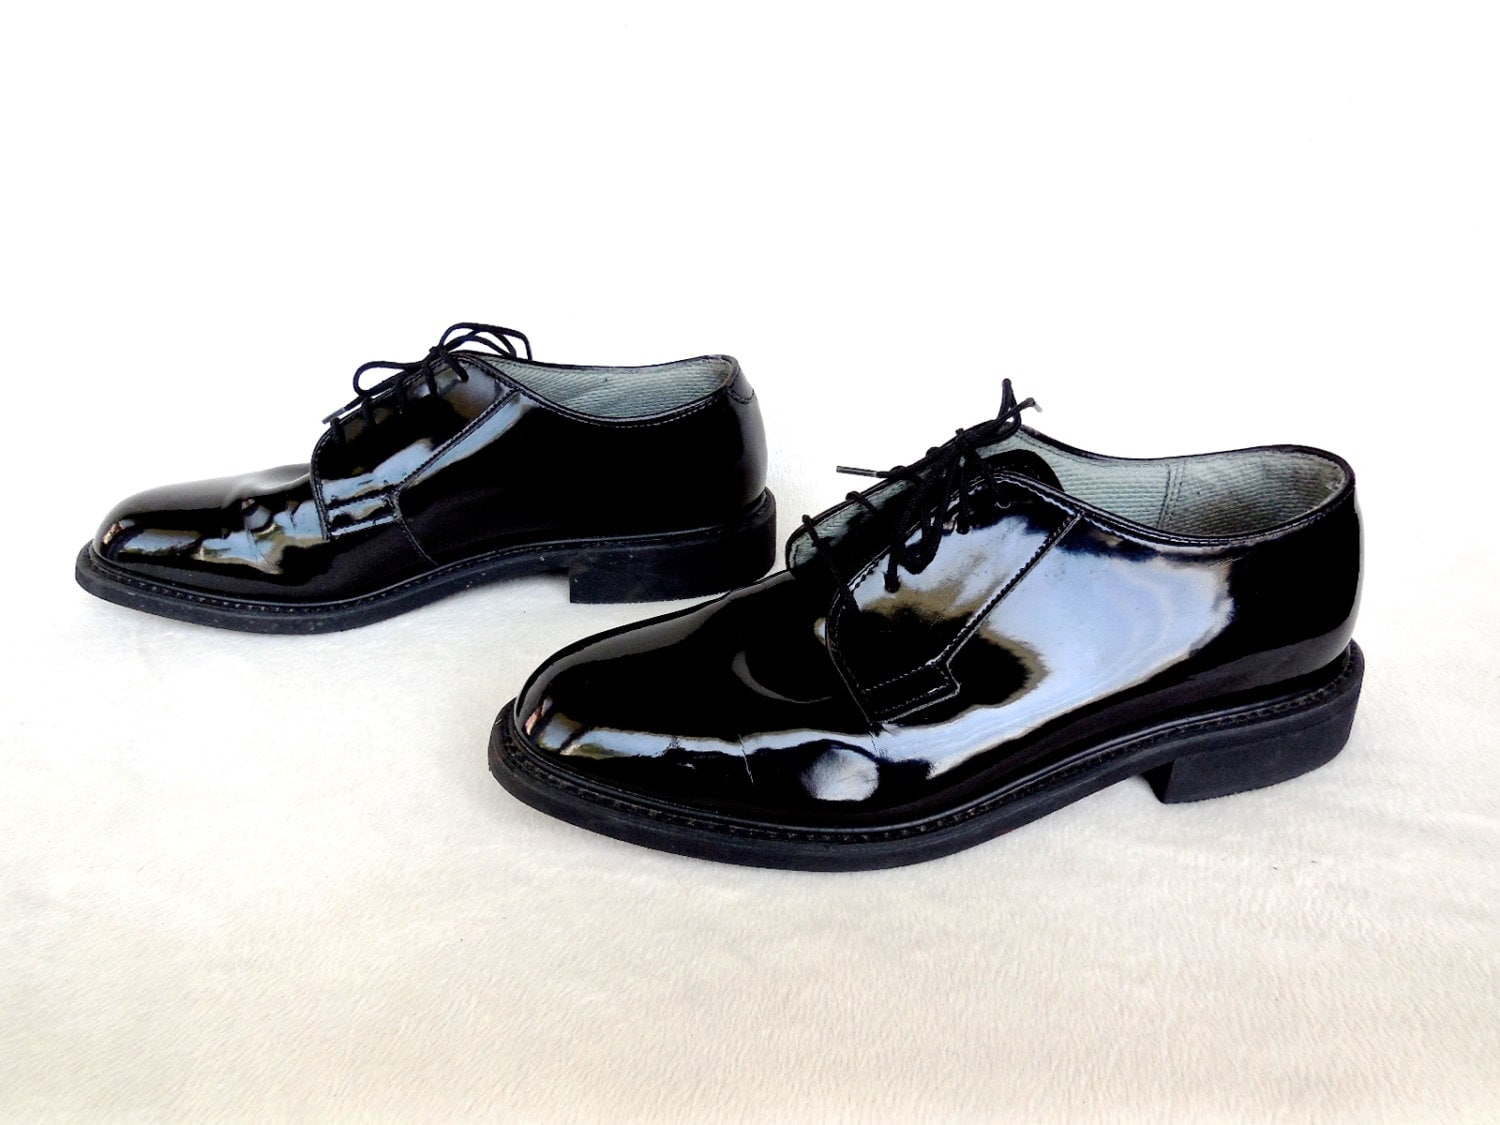 Patent Leather Uniform Shoes 80